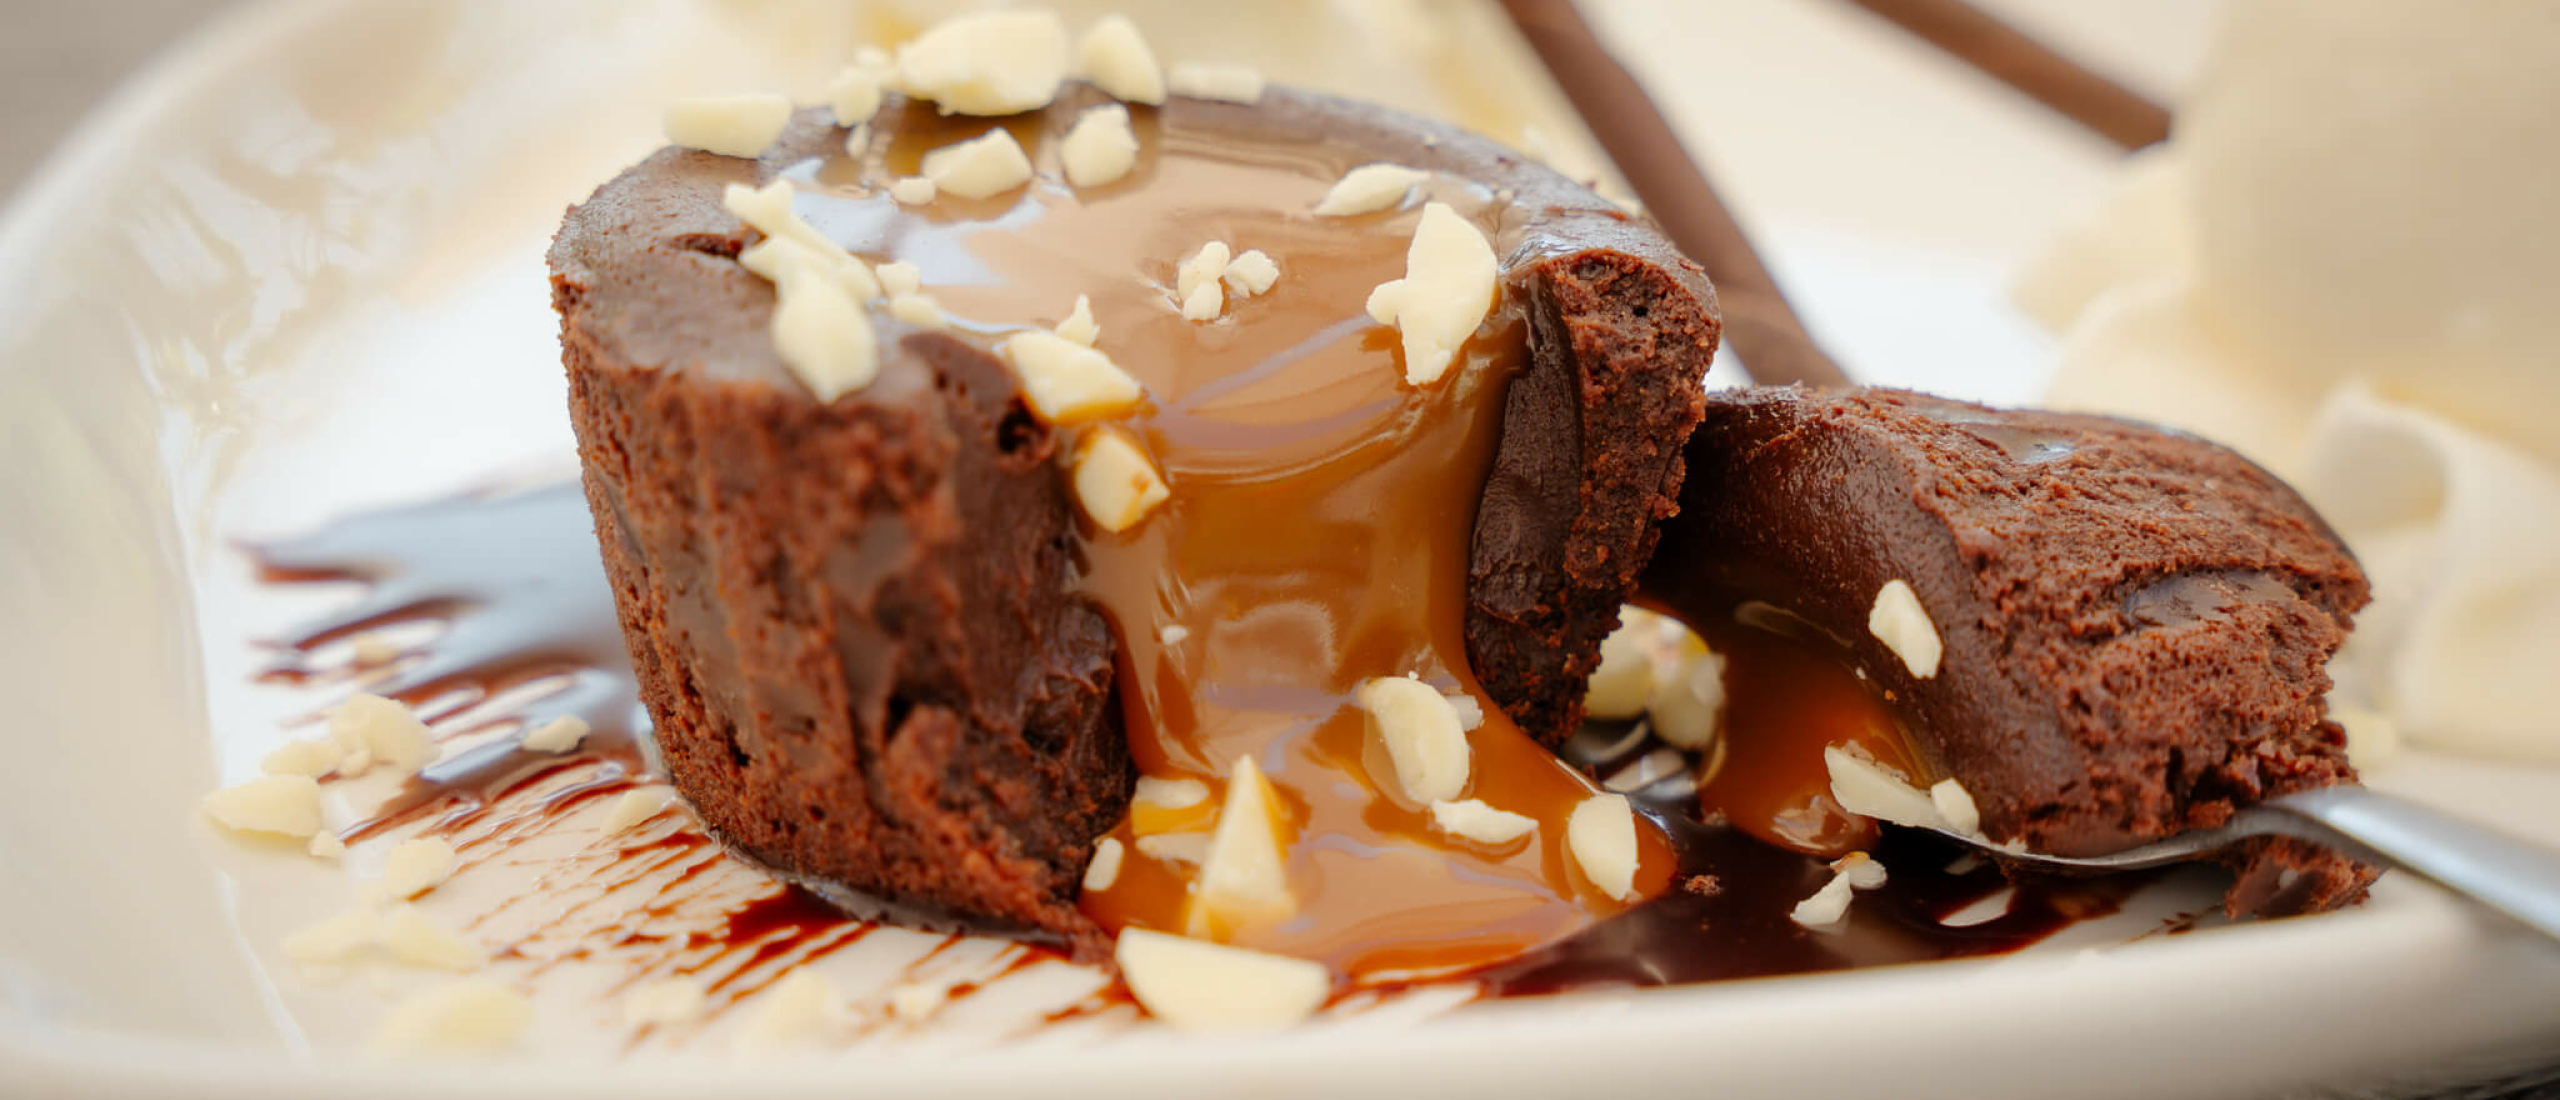 VIDEO: Moelleux chocolade. Het lekkerste dessert van Noordwijk.